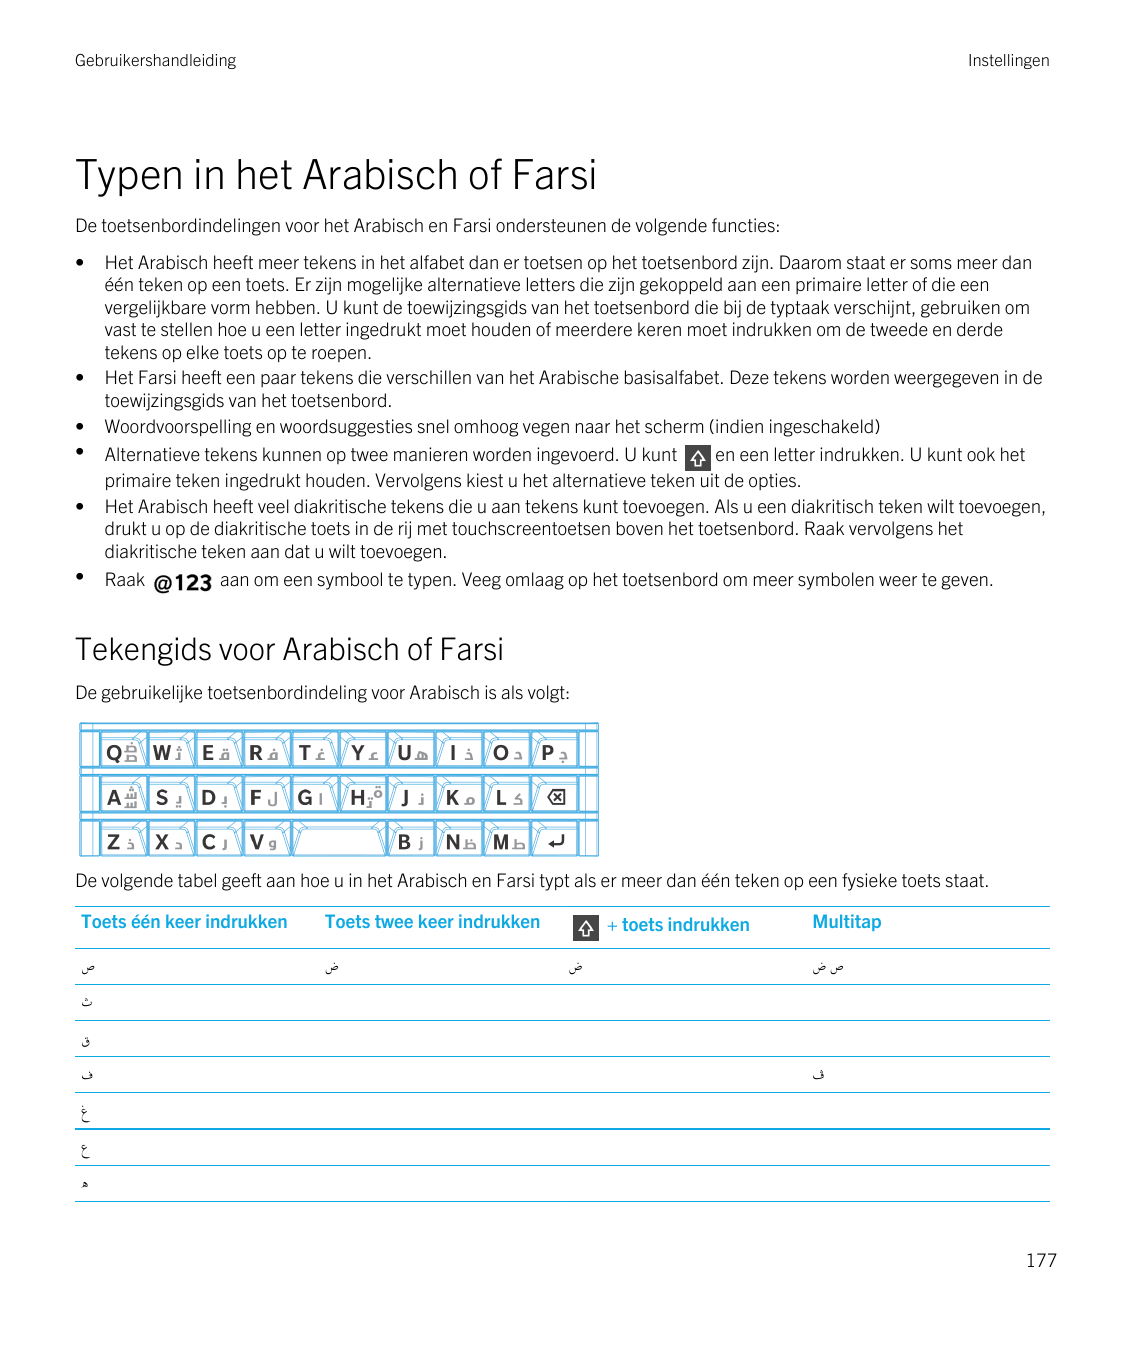 GebruikershandleidingInstellingenTypen in het Arabisch of FarsiDe toetsenbordindelingen voor het Arabisch en Farsi ondersteunen 